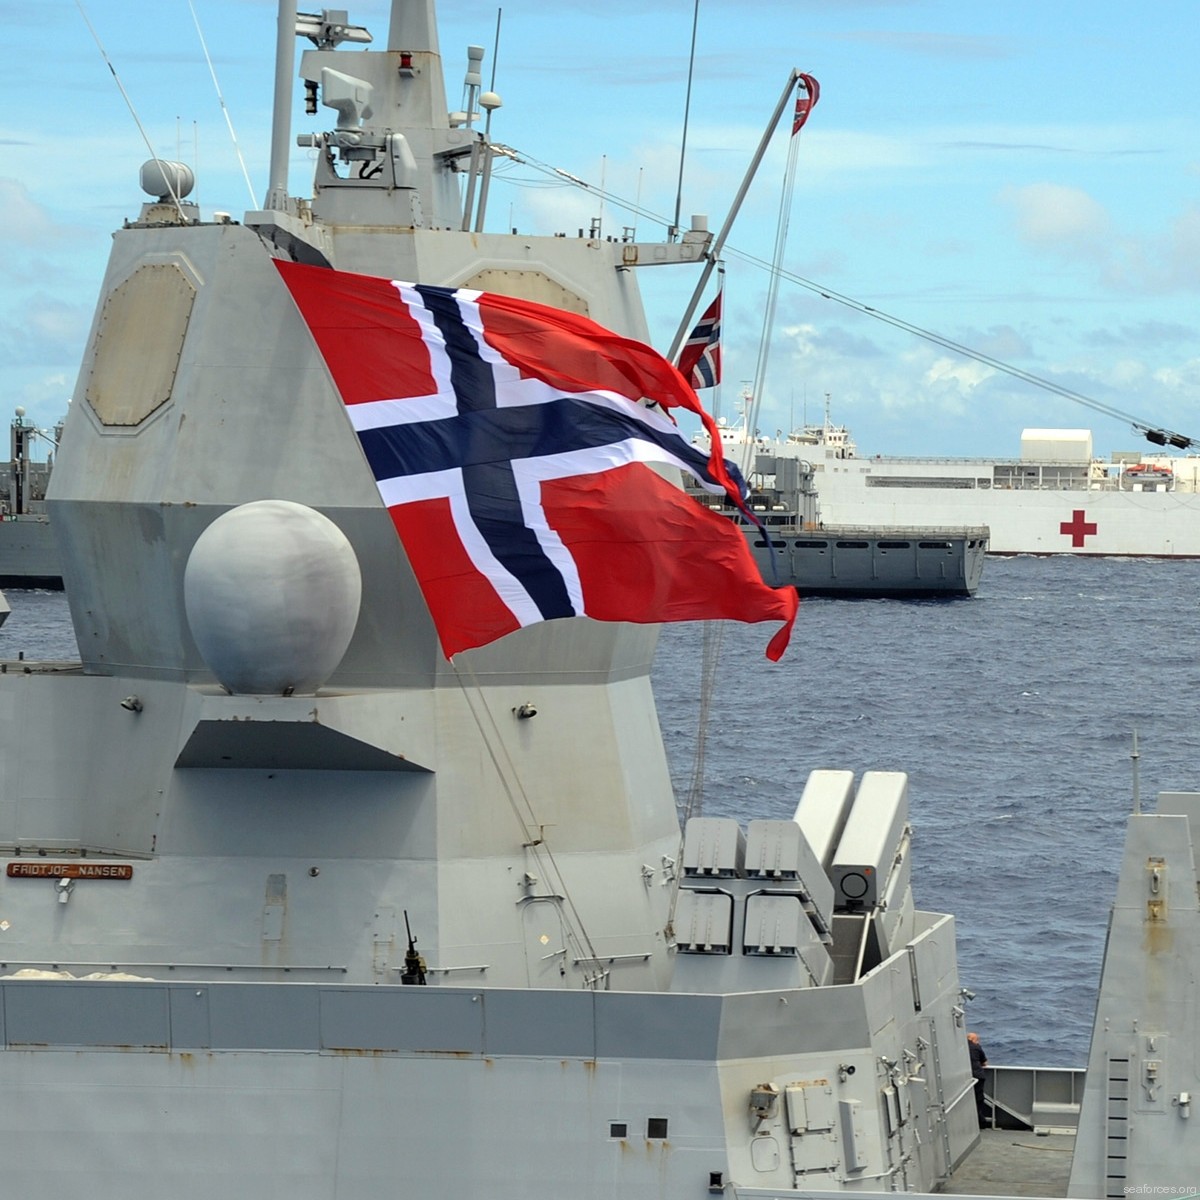 f-310 fridtjof nansen hnoms knm frigate royal norwegian navy sjoforsvaret 46 kongsberg defence systems naval strike missile nms